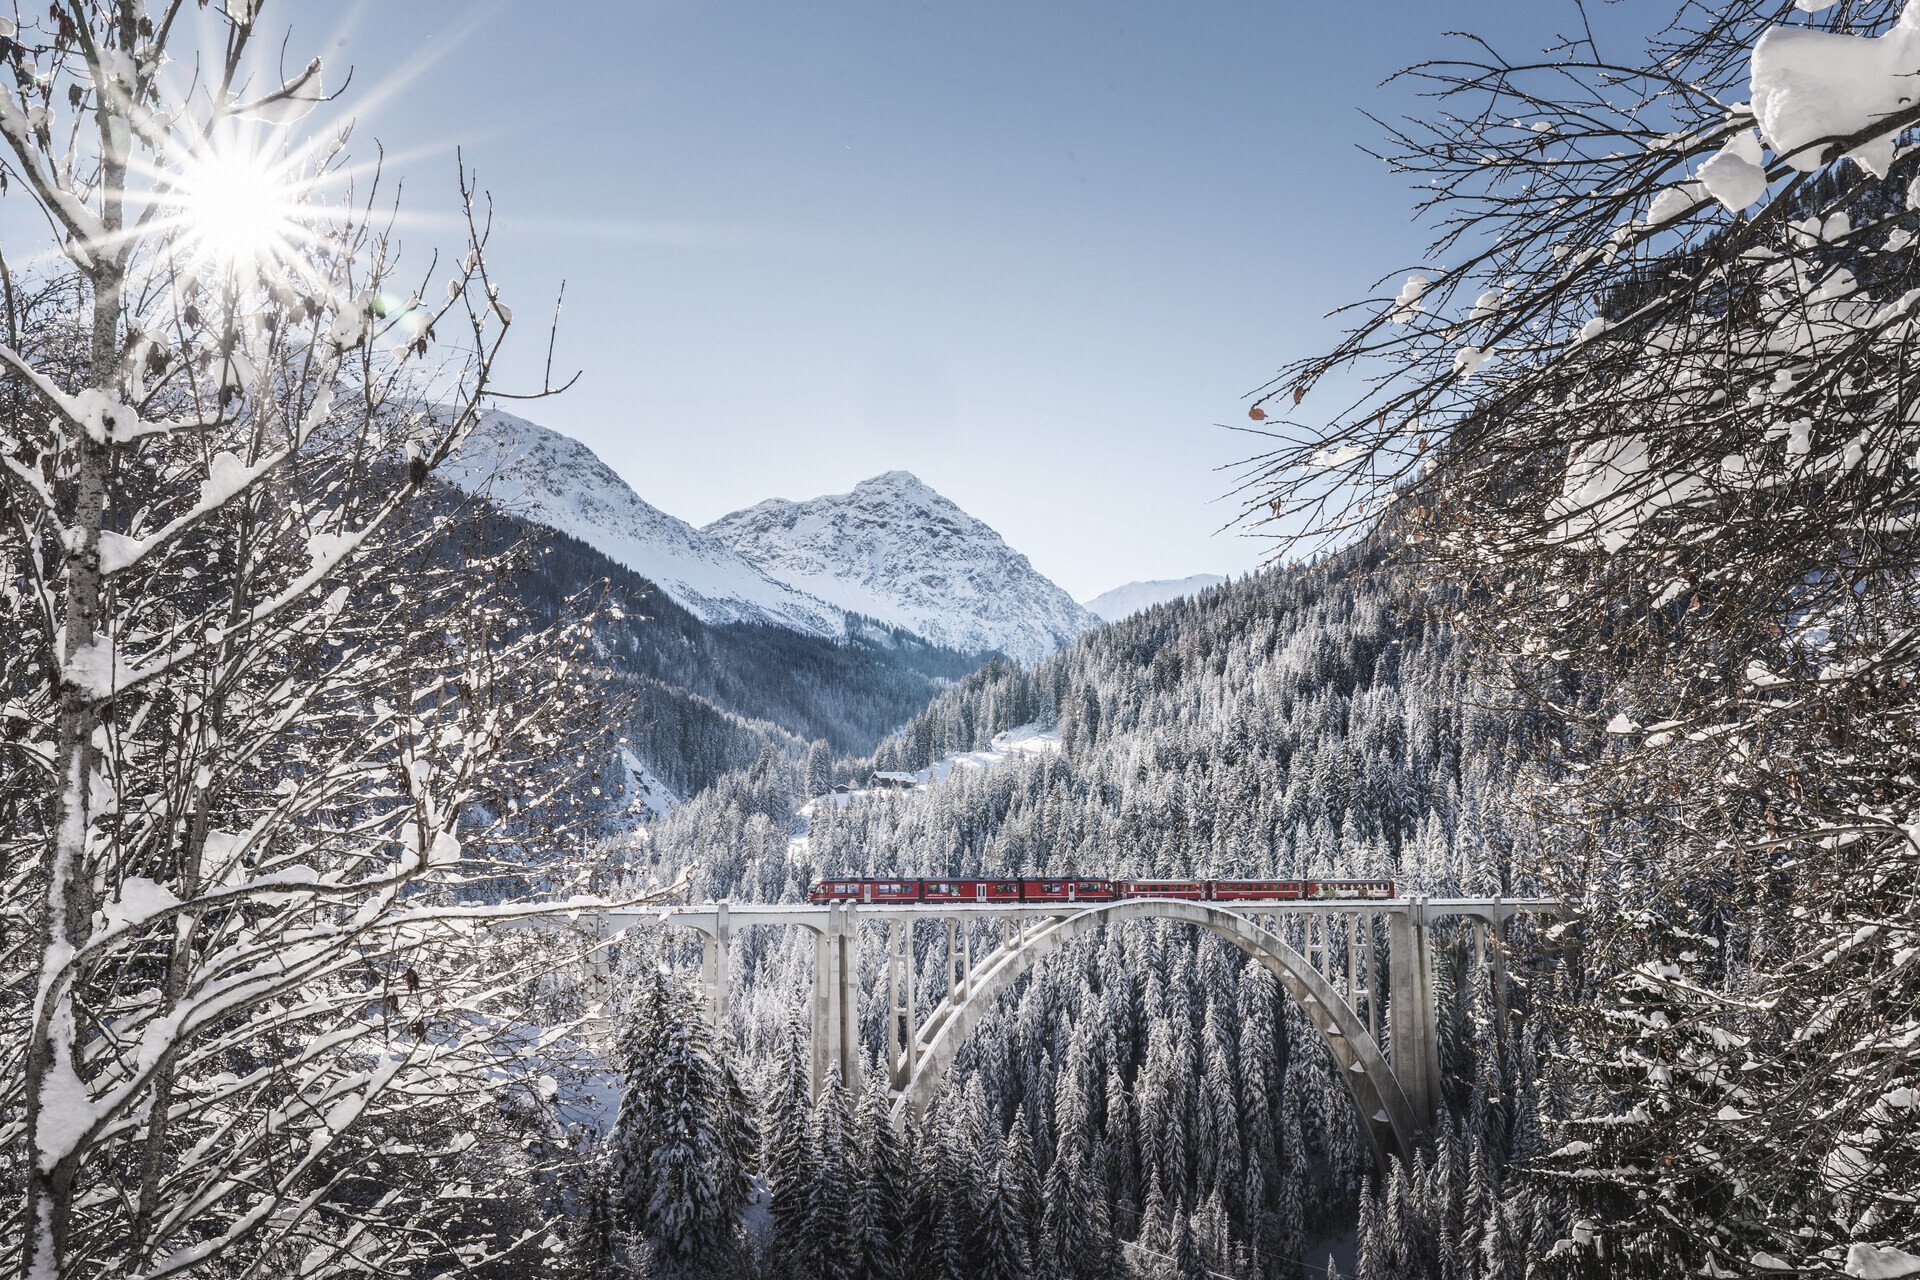 Krása pomalosti. Poznejte Švýcarsko z luxusního vlaku s nejkrásnějším výhledem